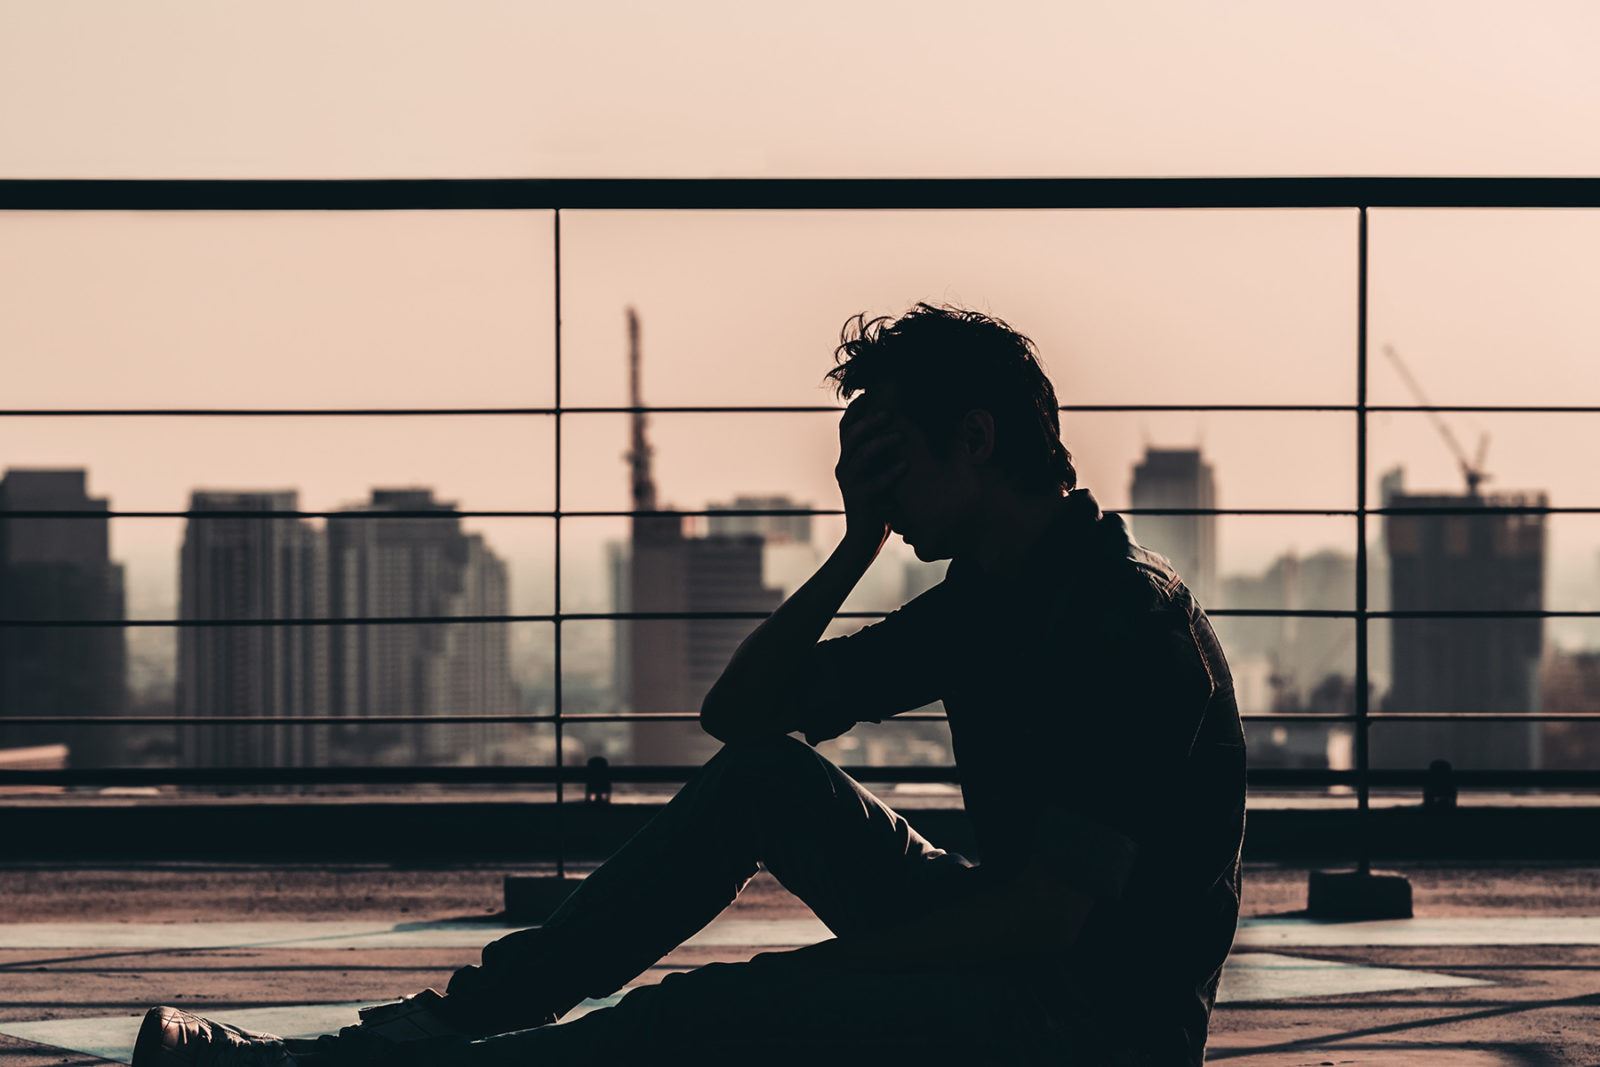 اعصاب و روان- نتایج یک بررسی جدید در دانشگاه ملبورن حاکی از این است که نرخ ابتلا به اضطراب و افسردگی در استرالیایی ها در طول ۸ سال گذشته افزایش شدیدی داشته است.